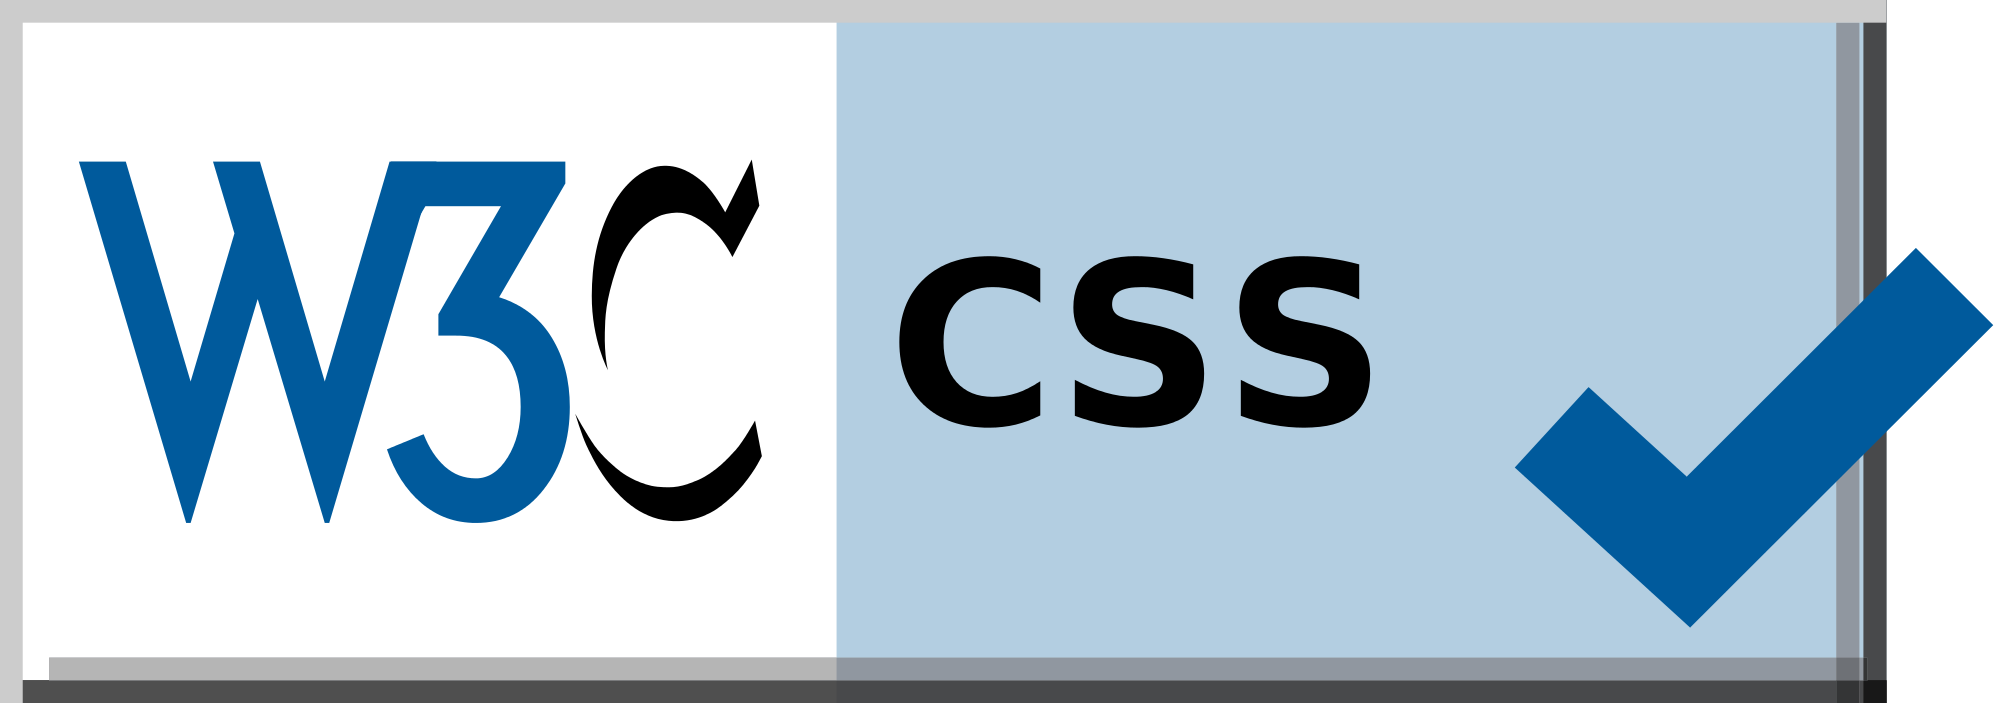 Валидатор css. W3c. W3 CSS. Валидатор html CSS. W3c validation.